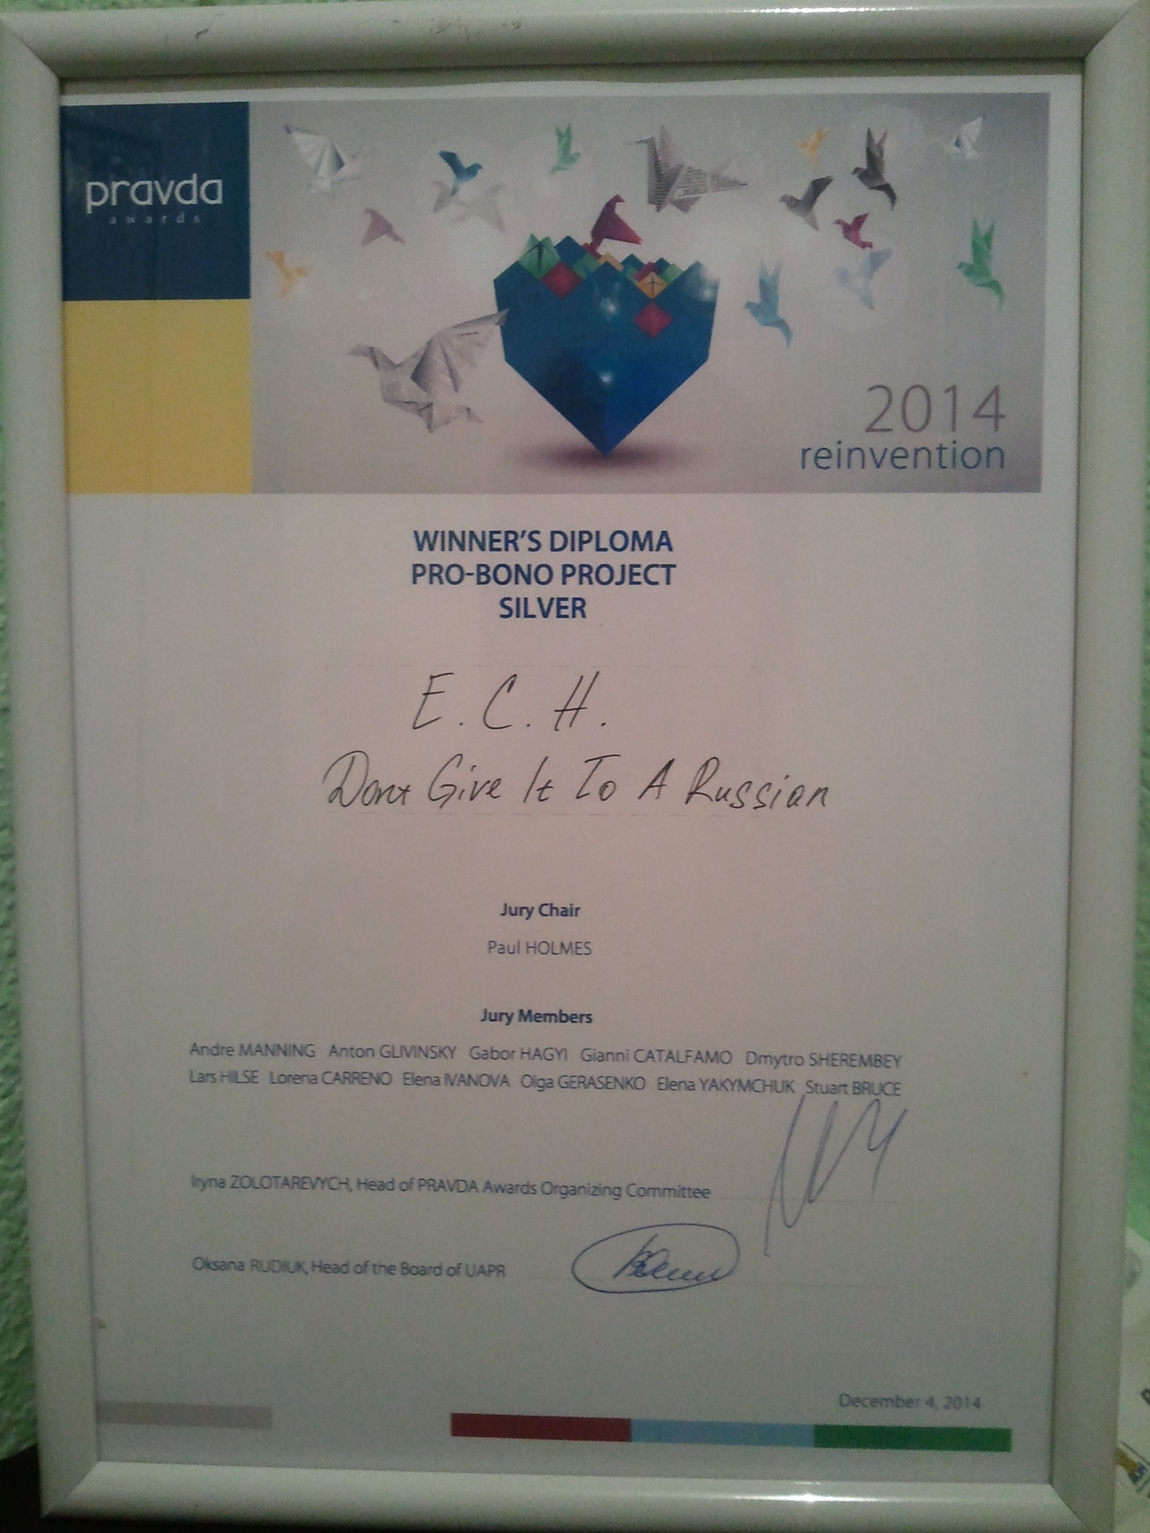 4 декабря состоялась церемония награждения Всеукраинского конкурса PR-проектов Pravda Awards 2014